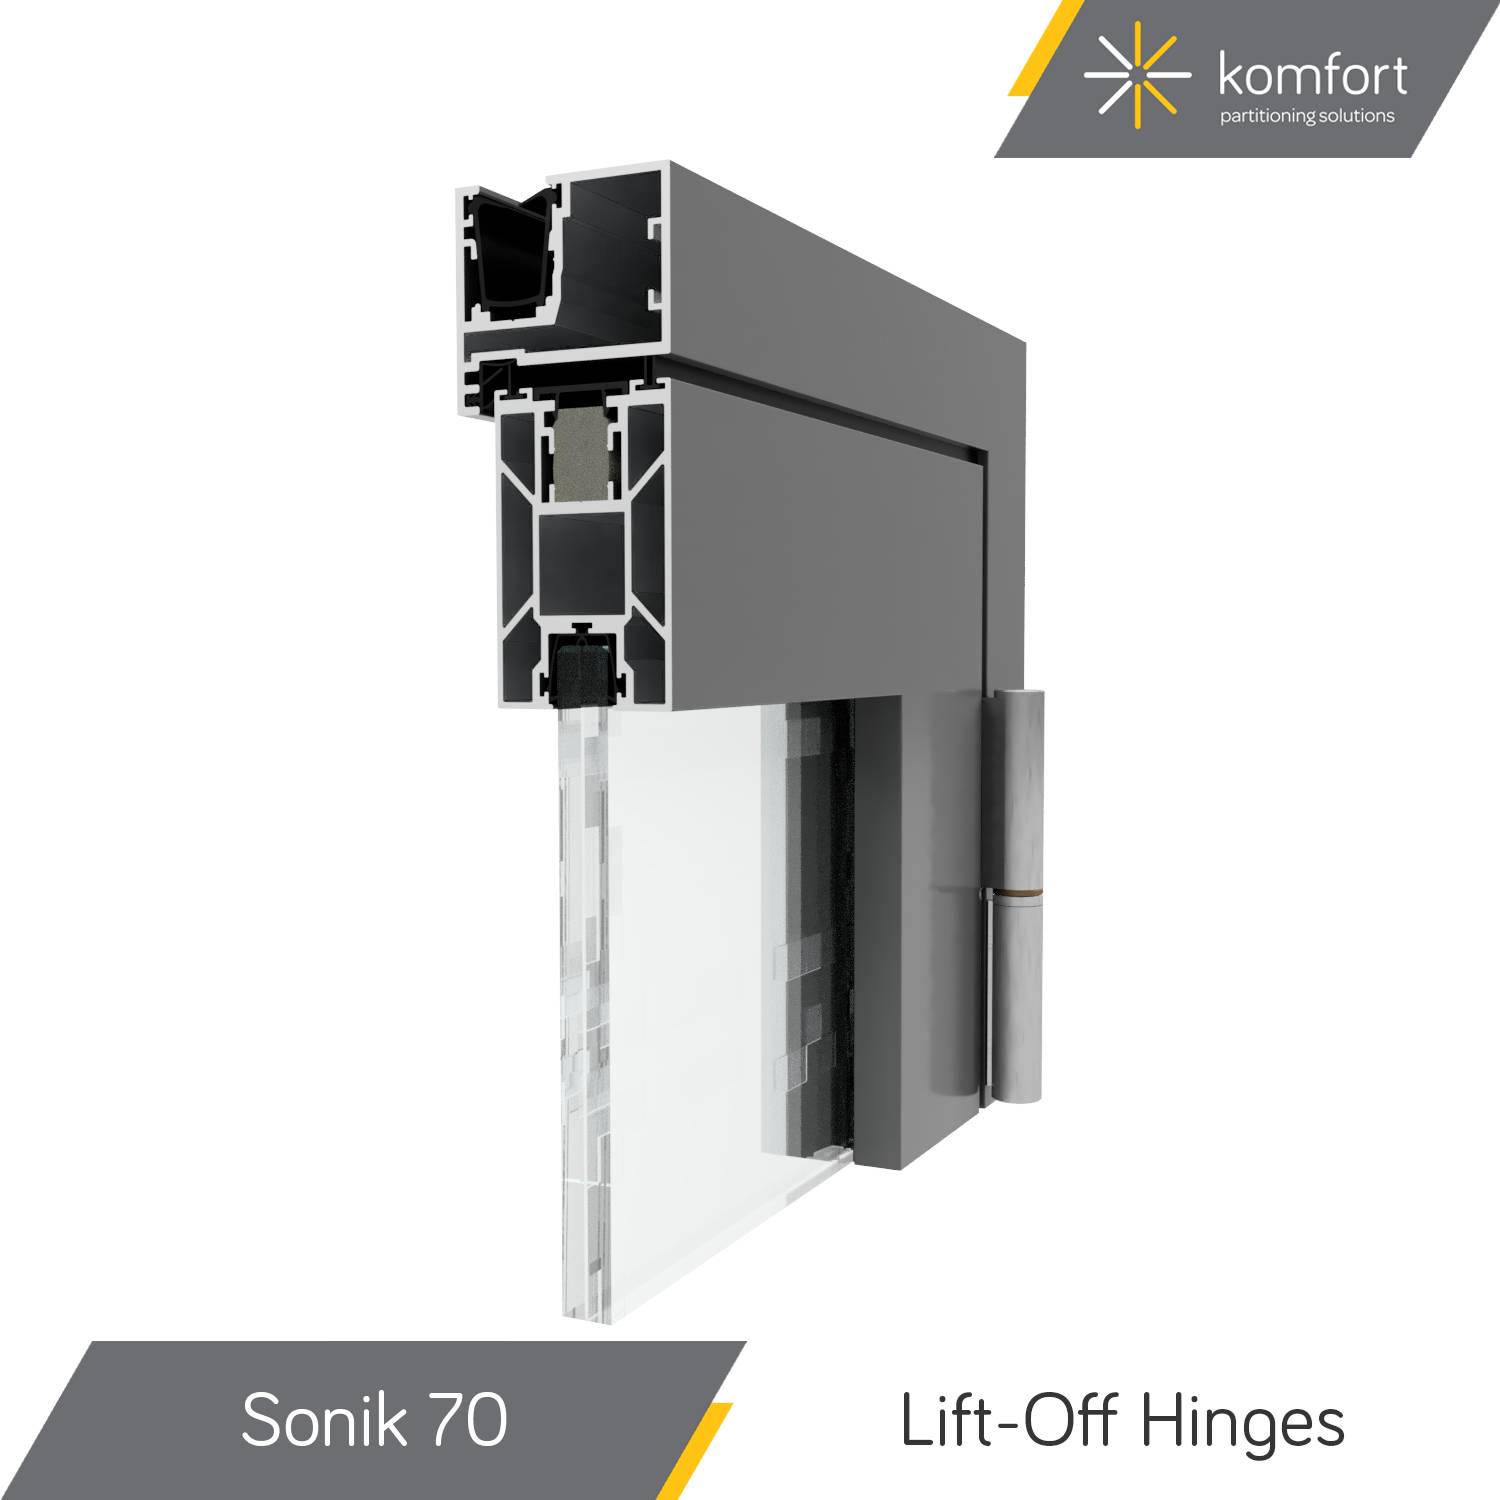 Komfort | Sonik 70 | Single & Double Glazed 44 mm Aluminium Doorsets